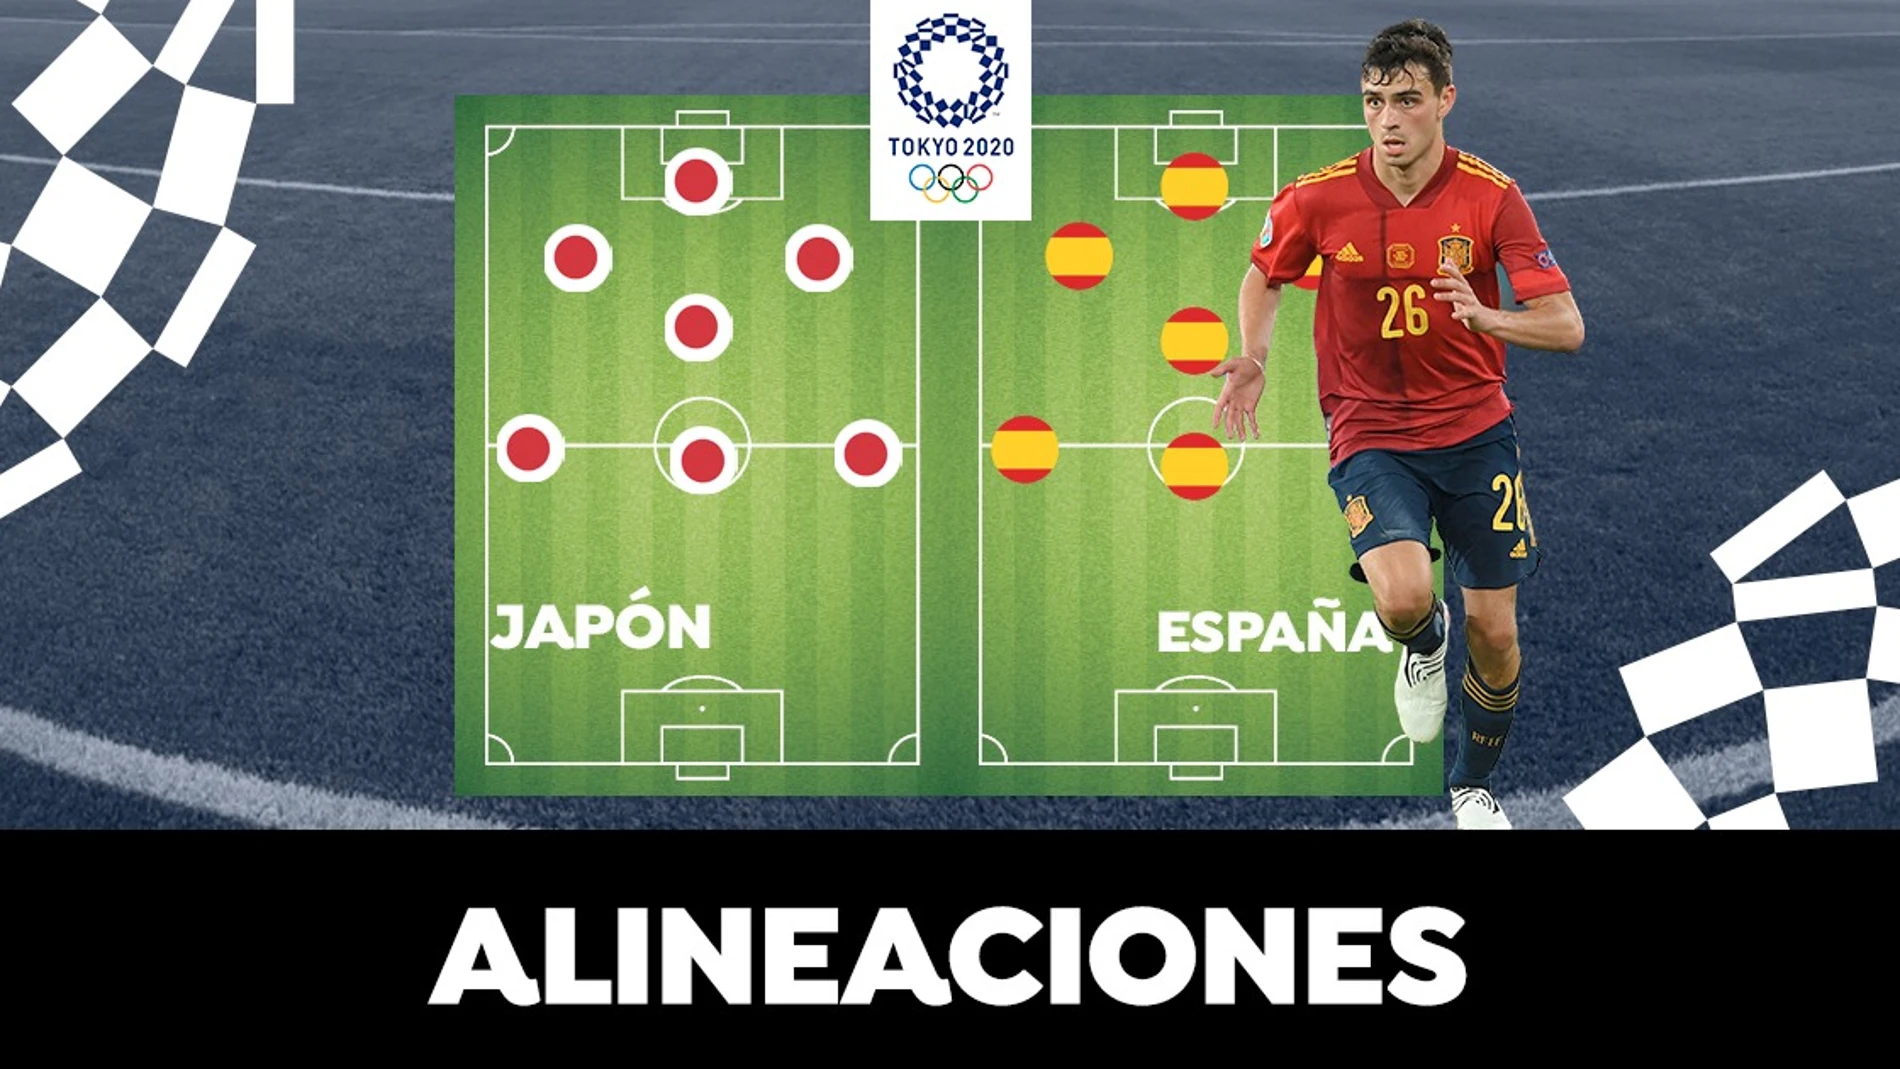 Alineación de España contra Japón en el partido de semifinales de los Juegos Olímpicos de Tokio 2020